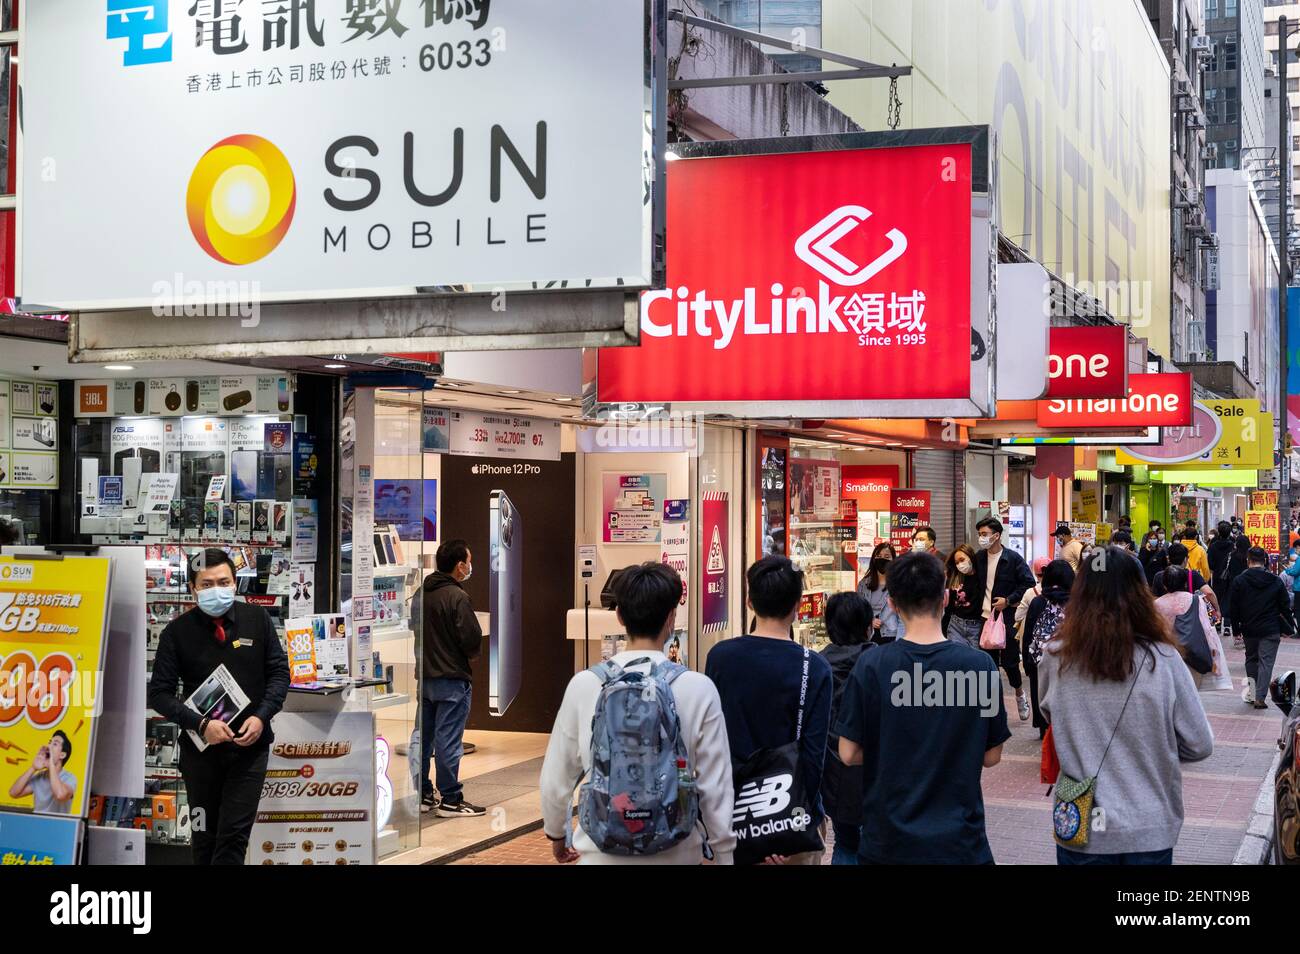 Des piétons marchent devant plusieurs sociétés de télécommunications, Sun Mobile, Citylink, magasins de Vodaphone à Hong Kong. Banque D'Images